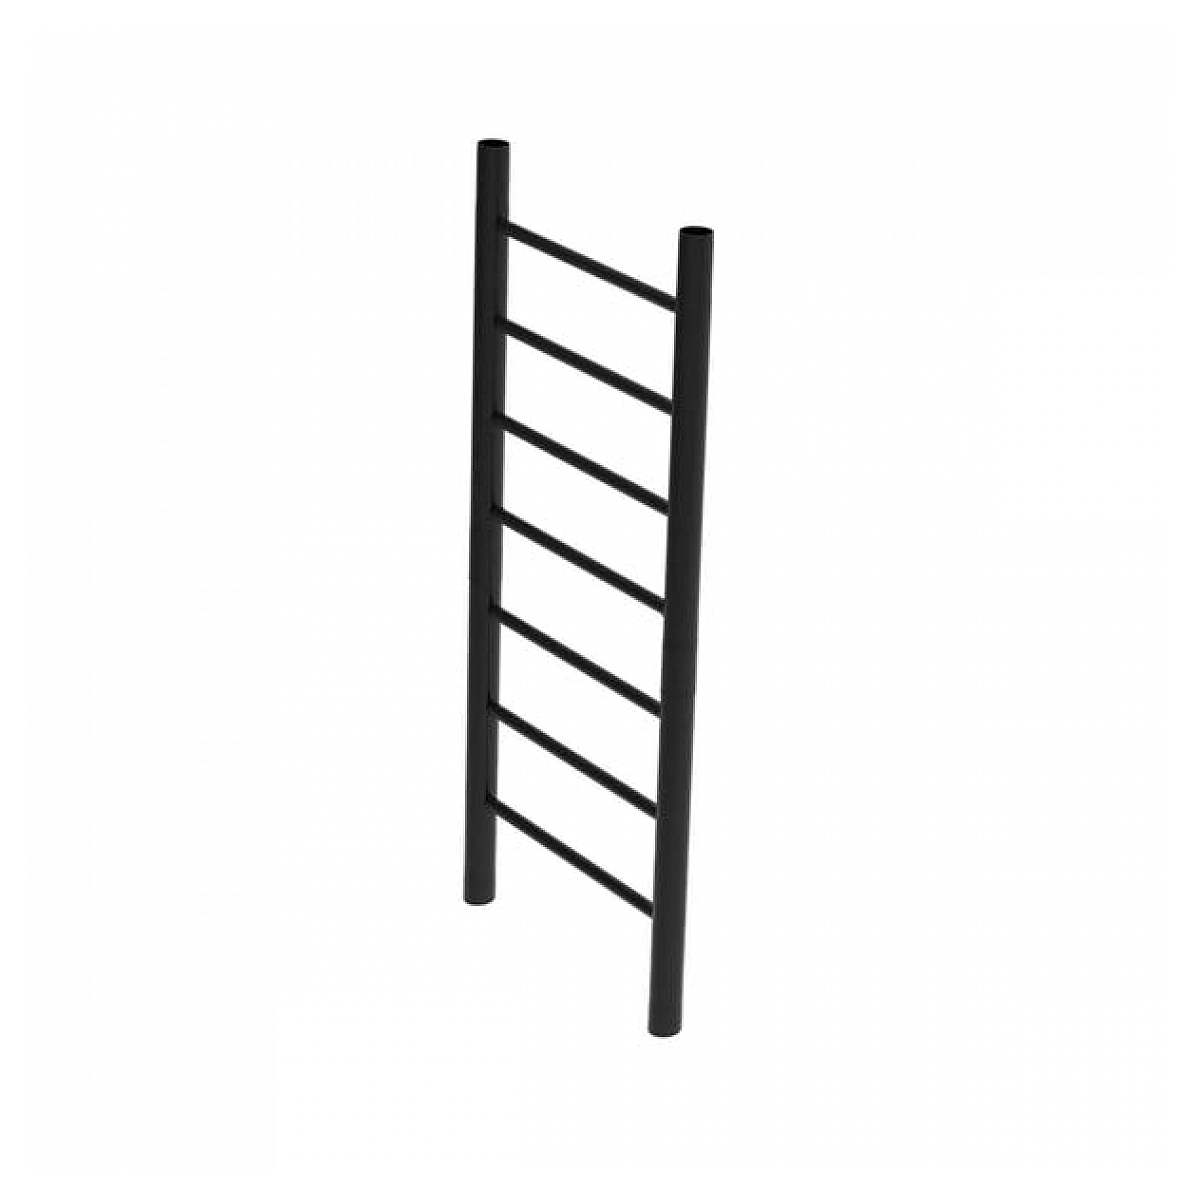 Playbase side frame ladder